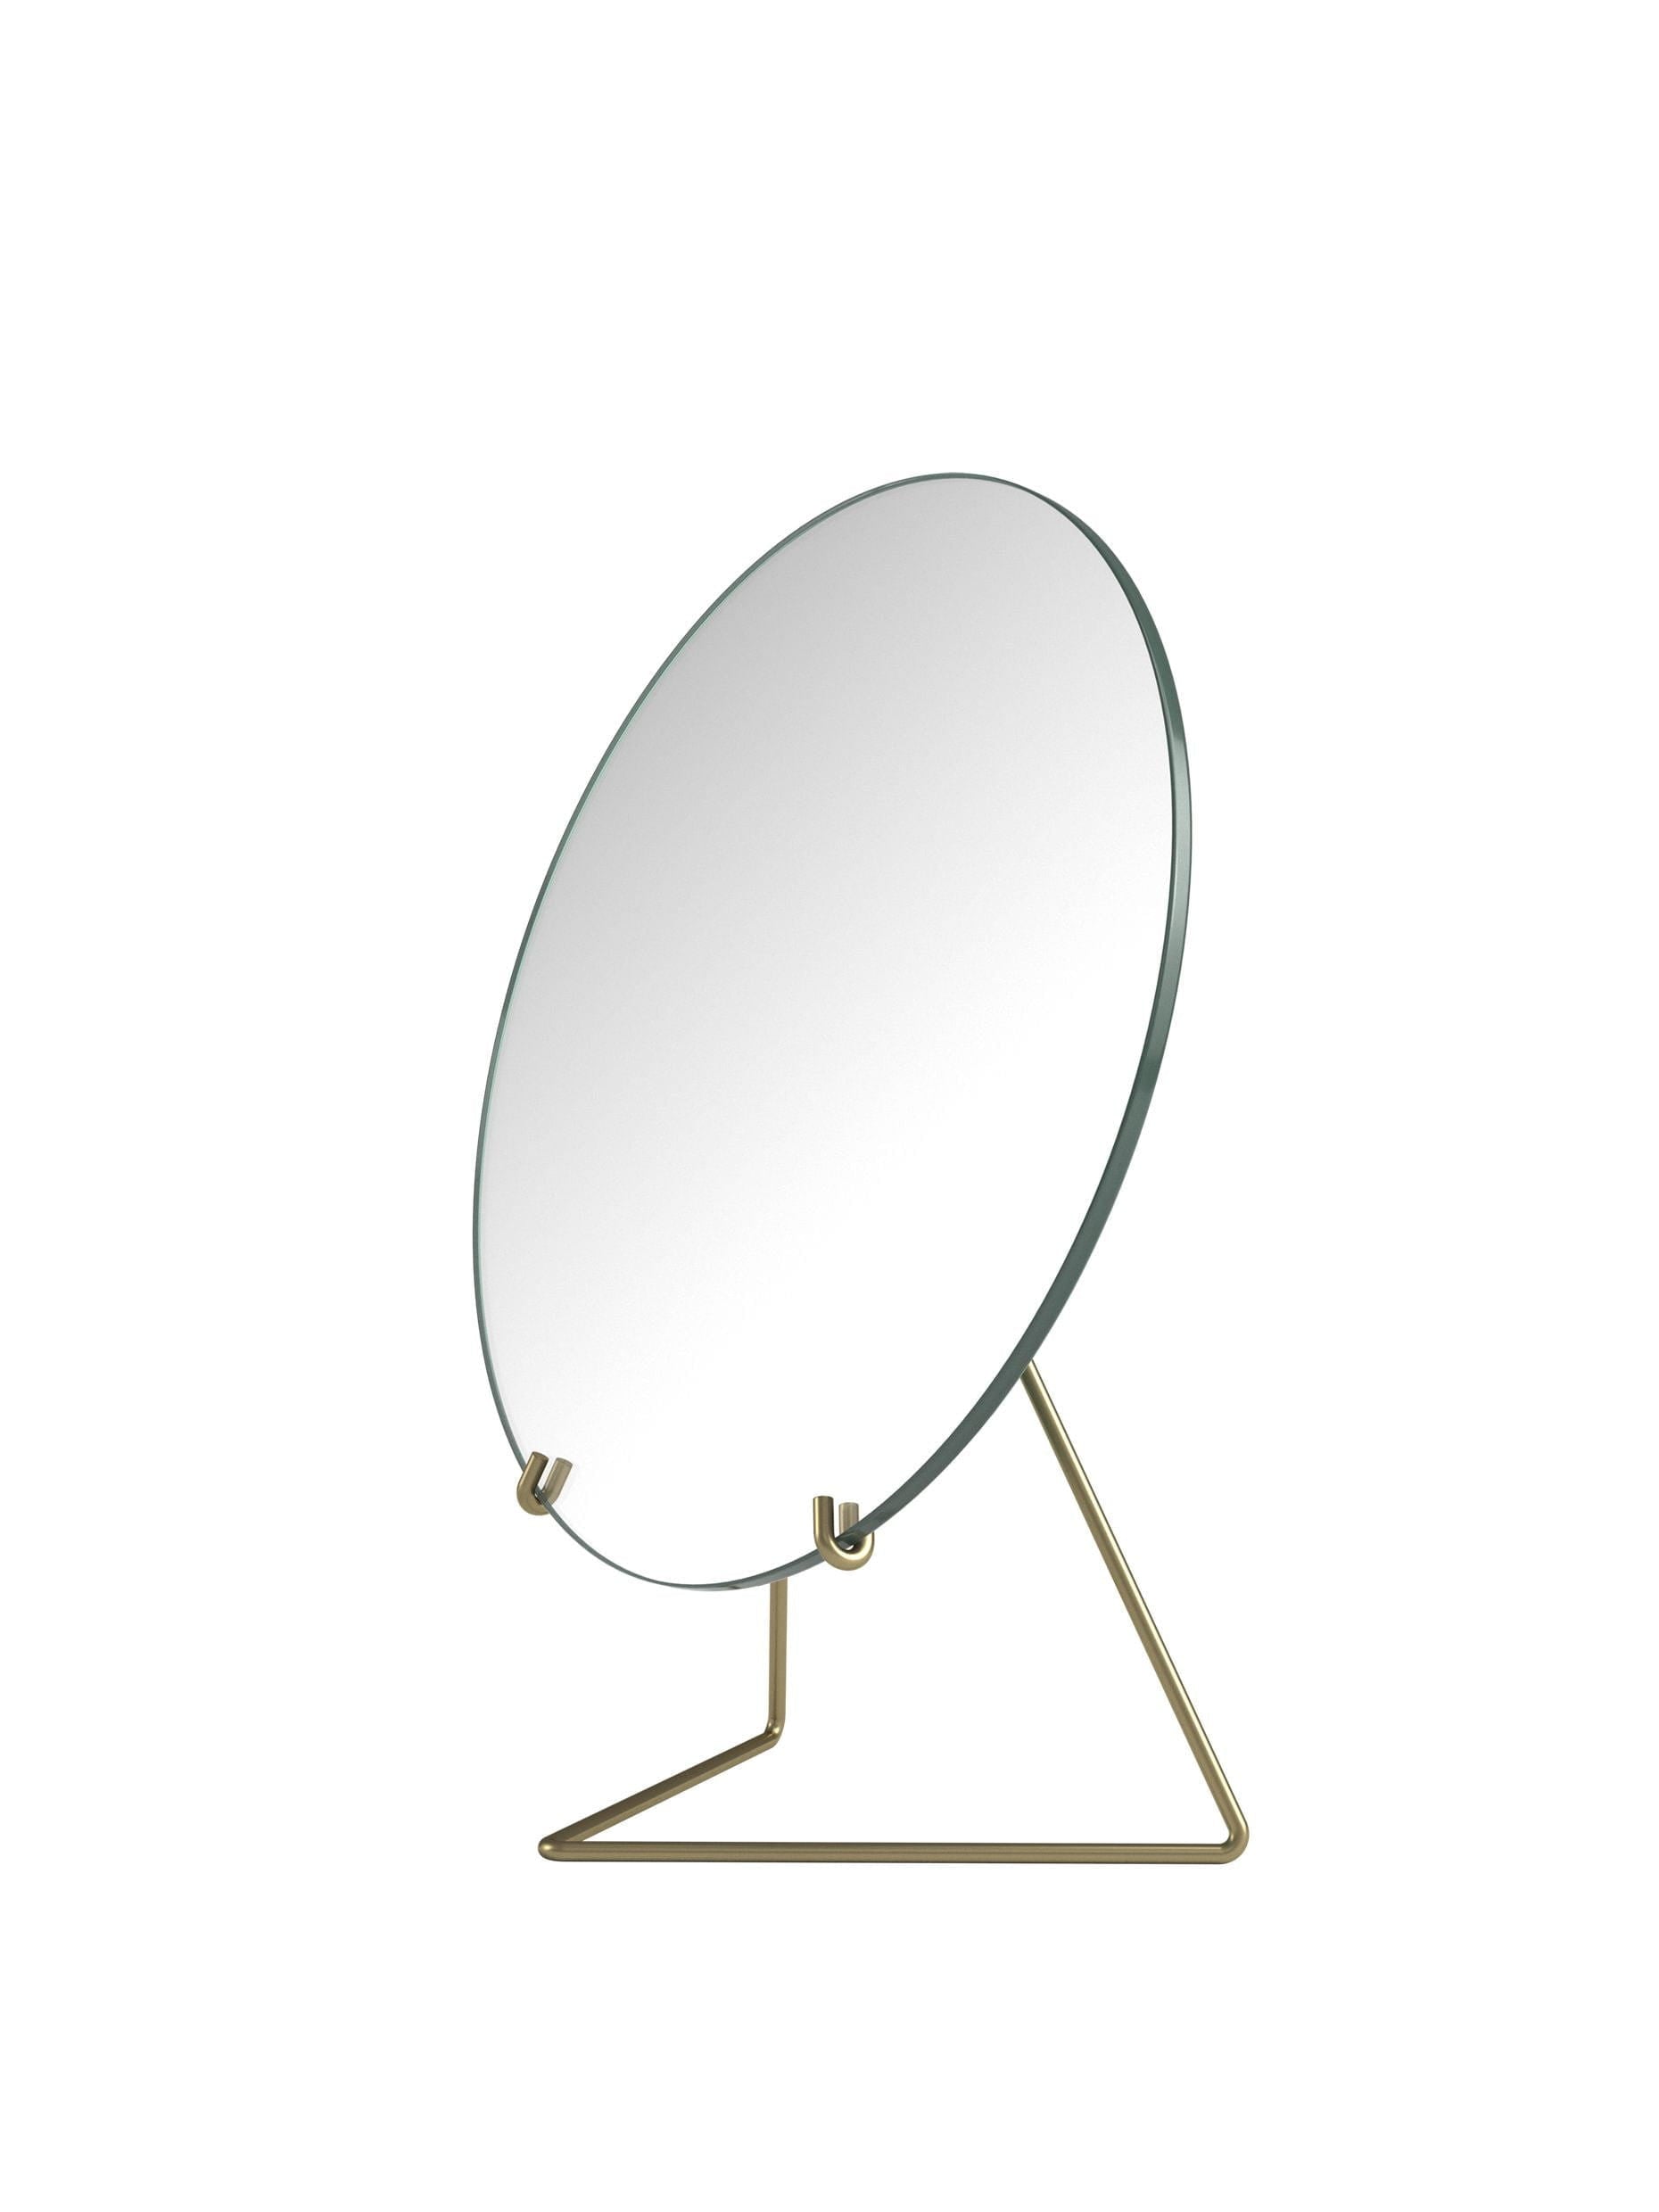 Moebe Standing Mirror Spejl Ø30 Cm, Messing-Moebe-662292600-MIBR30-MOE-Allbuy